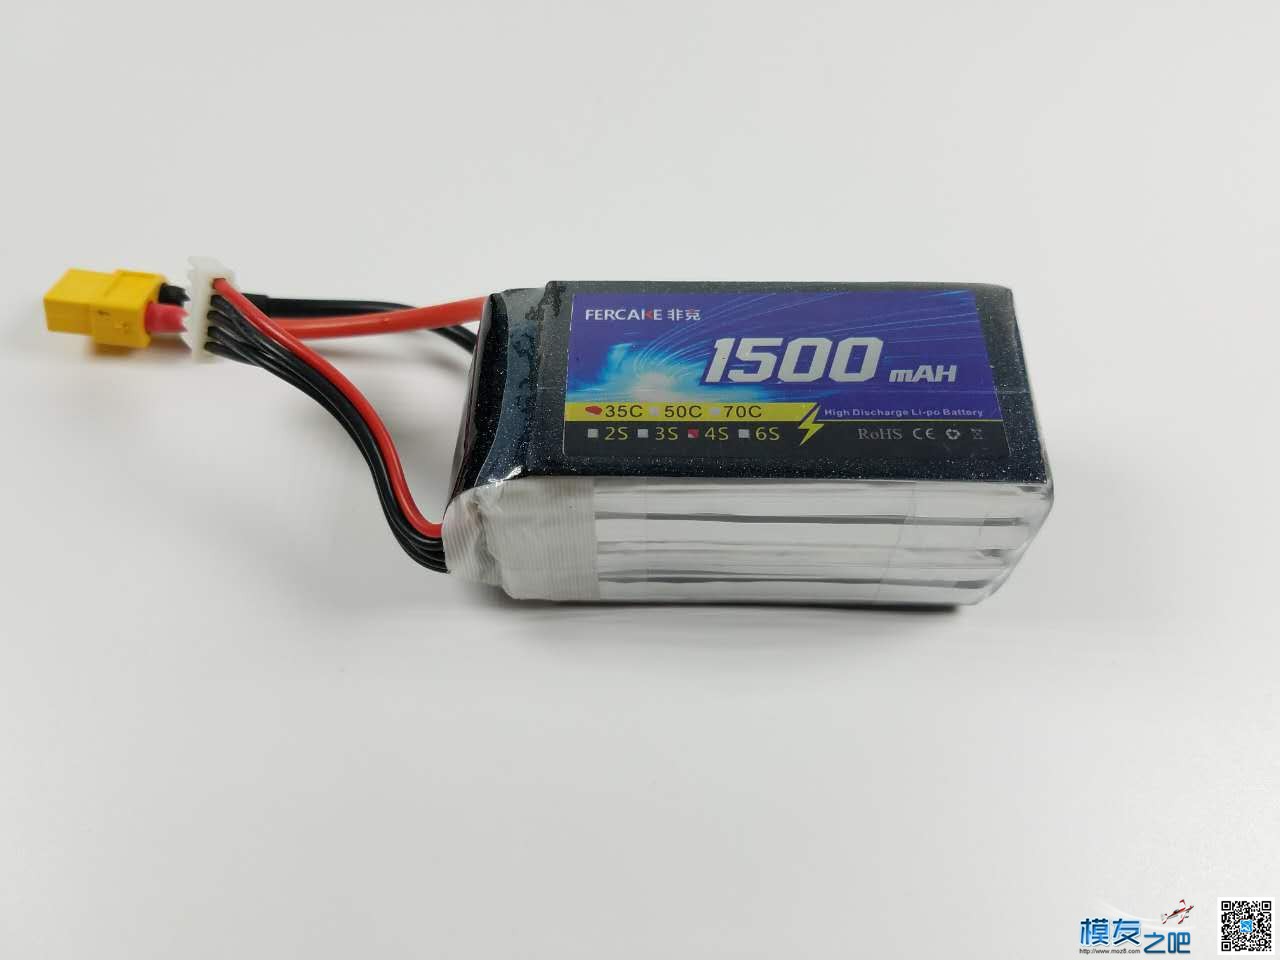 非克电池测试体验活动 电池,非克汽车02,taobao 作者:飞天狼 8887 